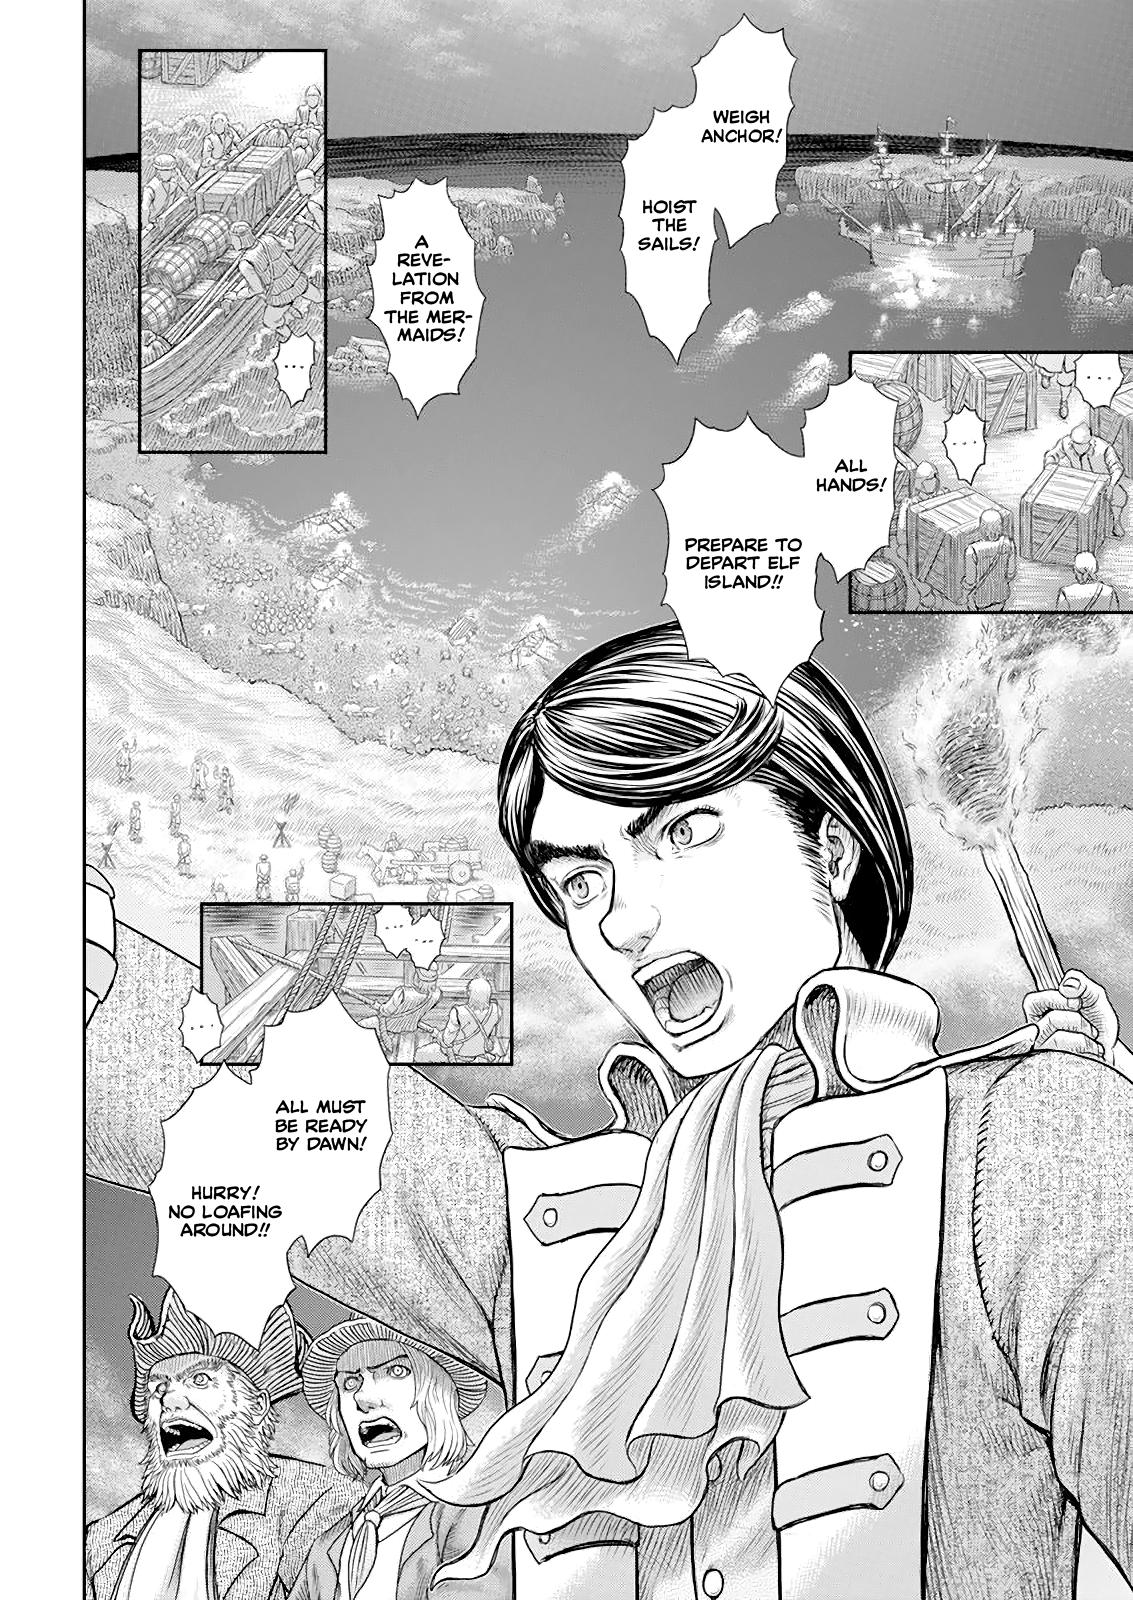 Berserk Manga Chapter 368 image 07